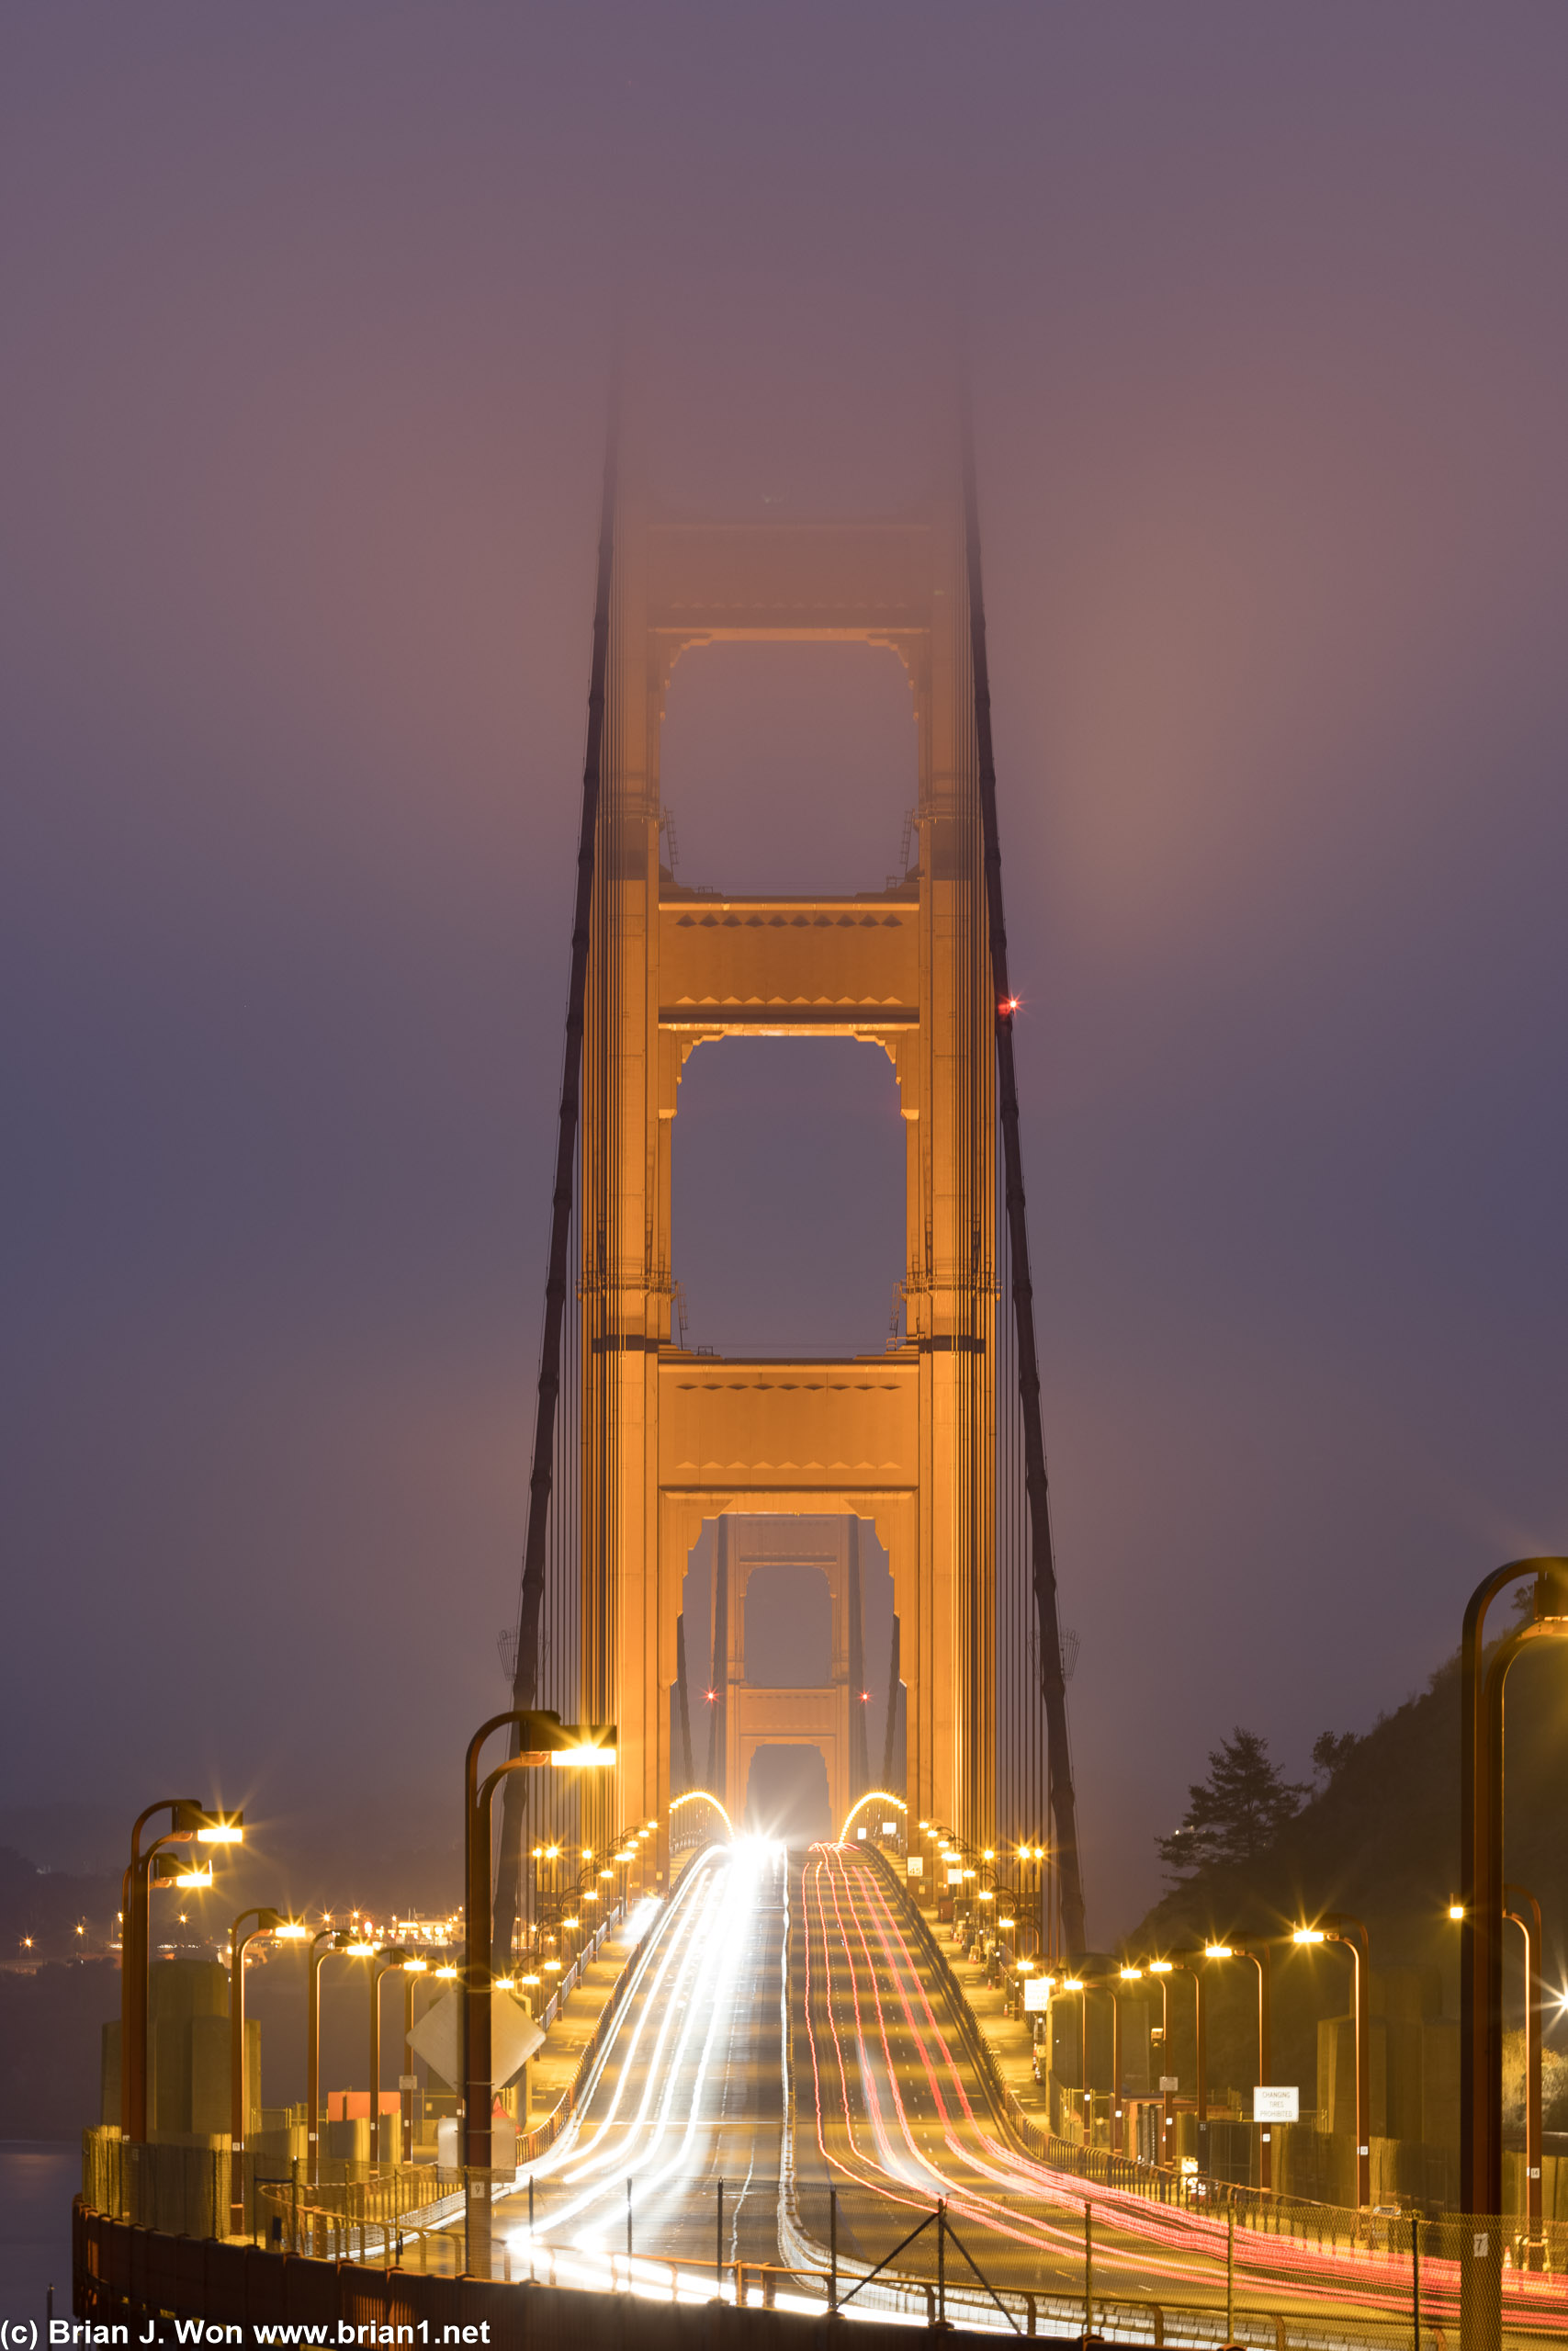 Awaiting sunrise over the Golden Gate Bridge.